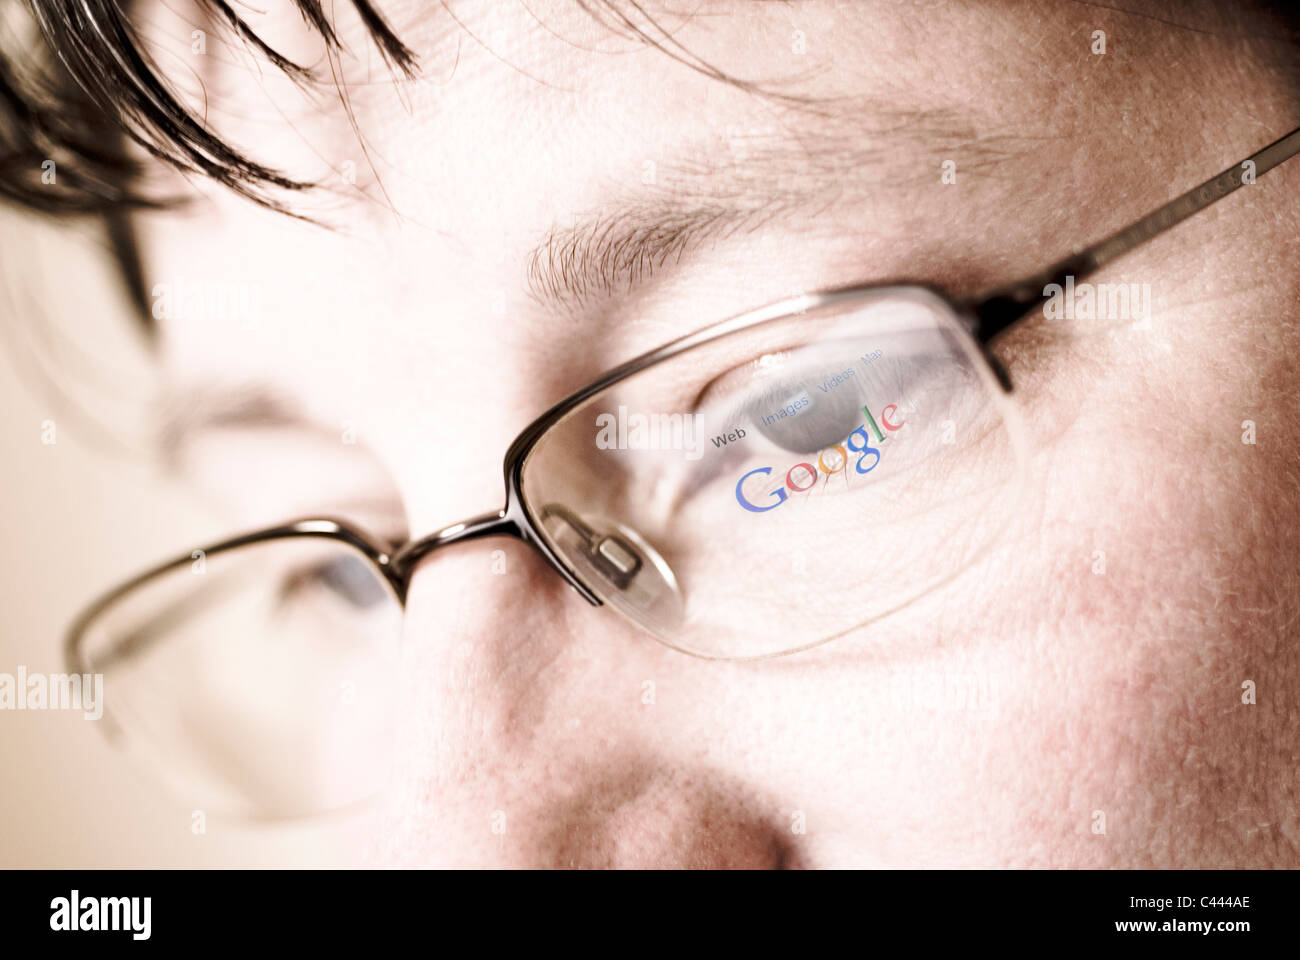 Reflet de moteur de recherche logo Google et page web dans des verres. Banque D'Images